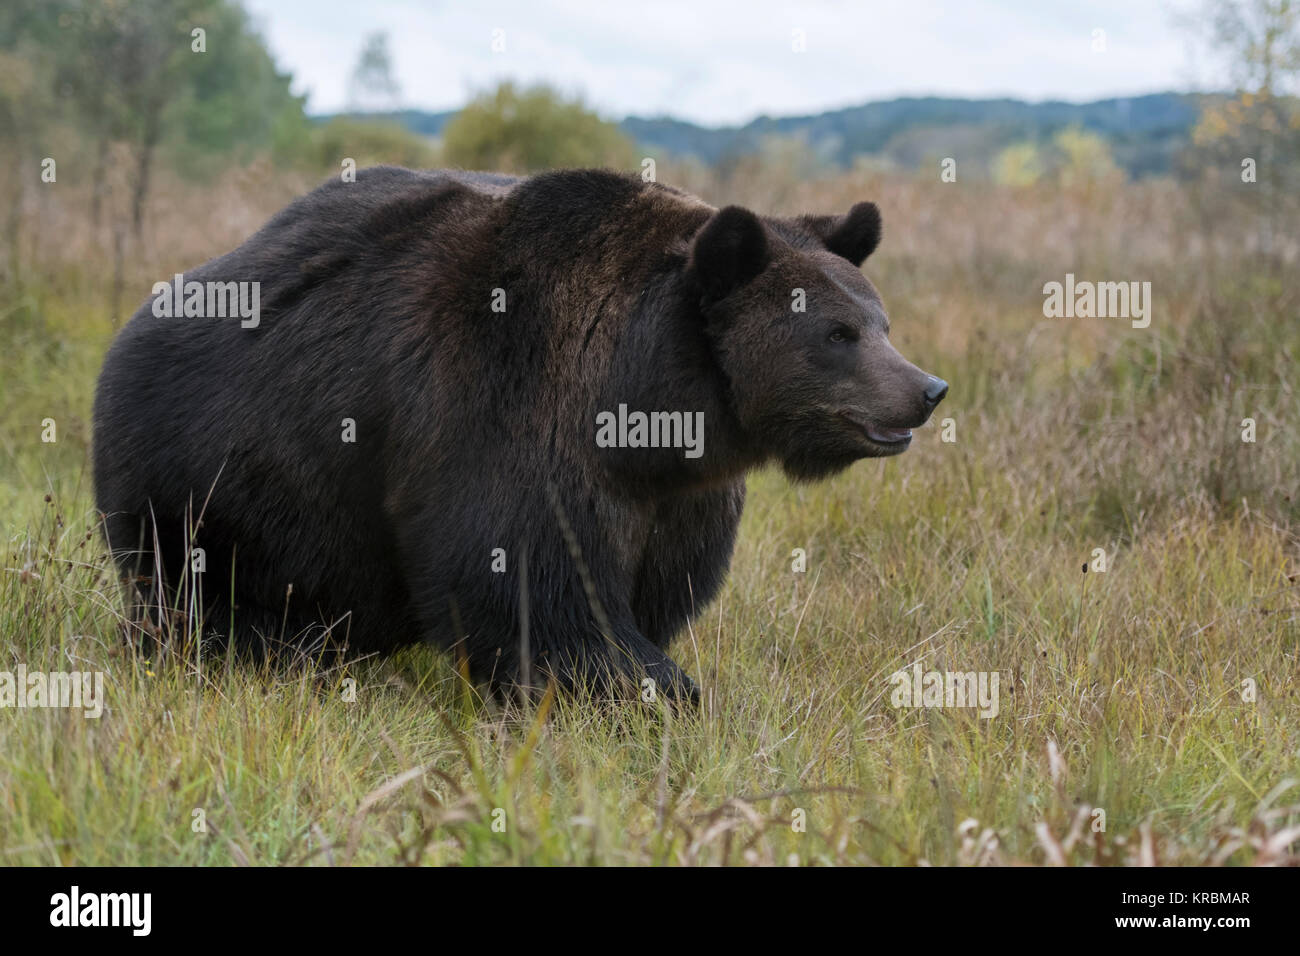 Braunbär (Ursus arctos), leistungsstarke Erwachsene, gut für den Winter vorbereitet, zu Fuß durch eine nasse Wiese, Sumpf, Moor nahe an den Rand eines Waldes, Europa Stockfoto